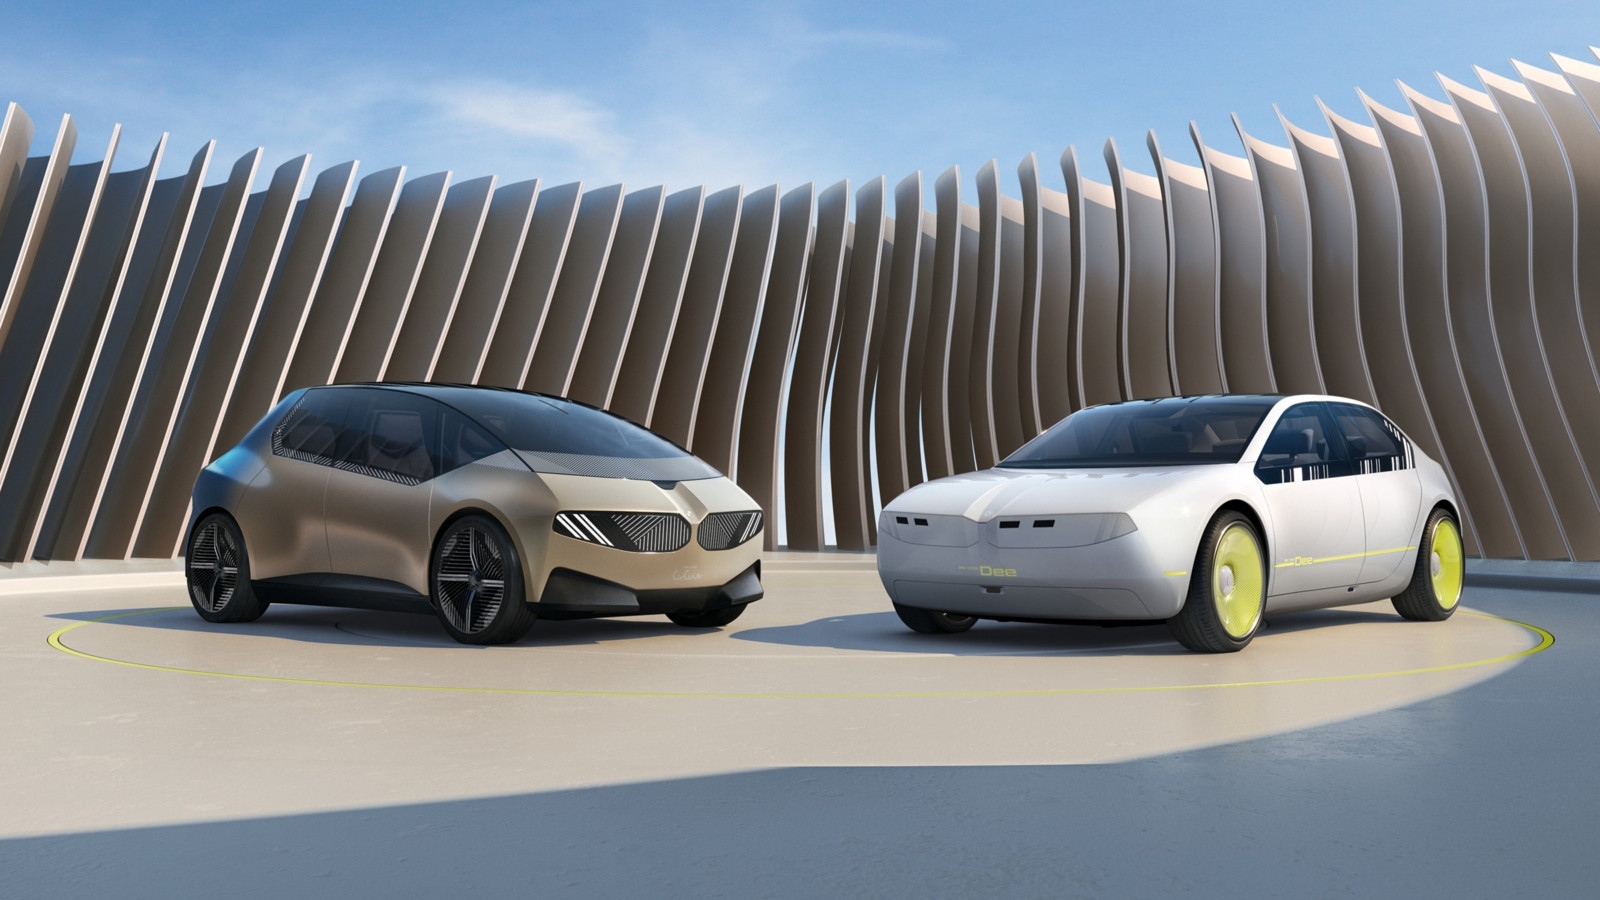  „BMW i Vision Dee“ nennt der bayerische Autobauer eine futuristische Mittelklasse-Limousine. Der Name „Dee“ des Konzeptfahrzeugs soll für „Digital Emotional Experience“ stehen.